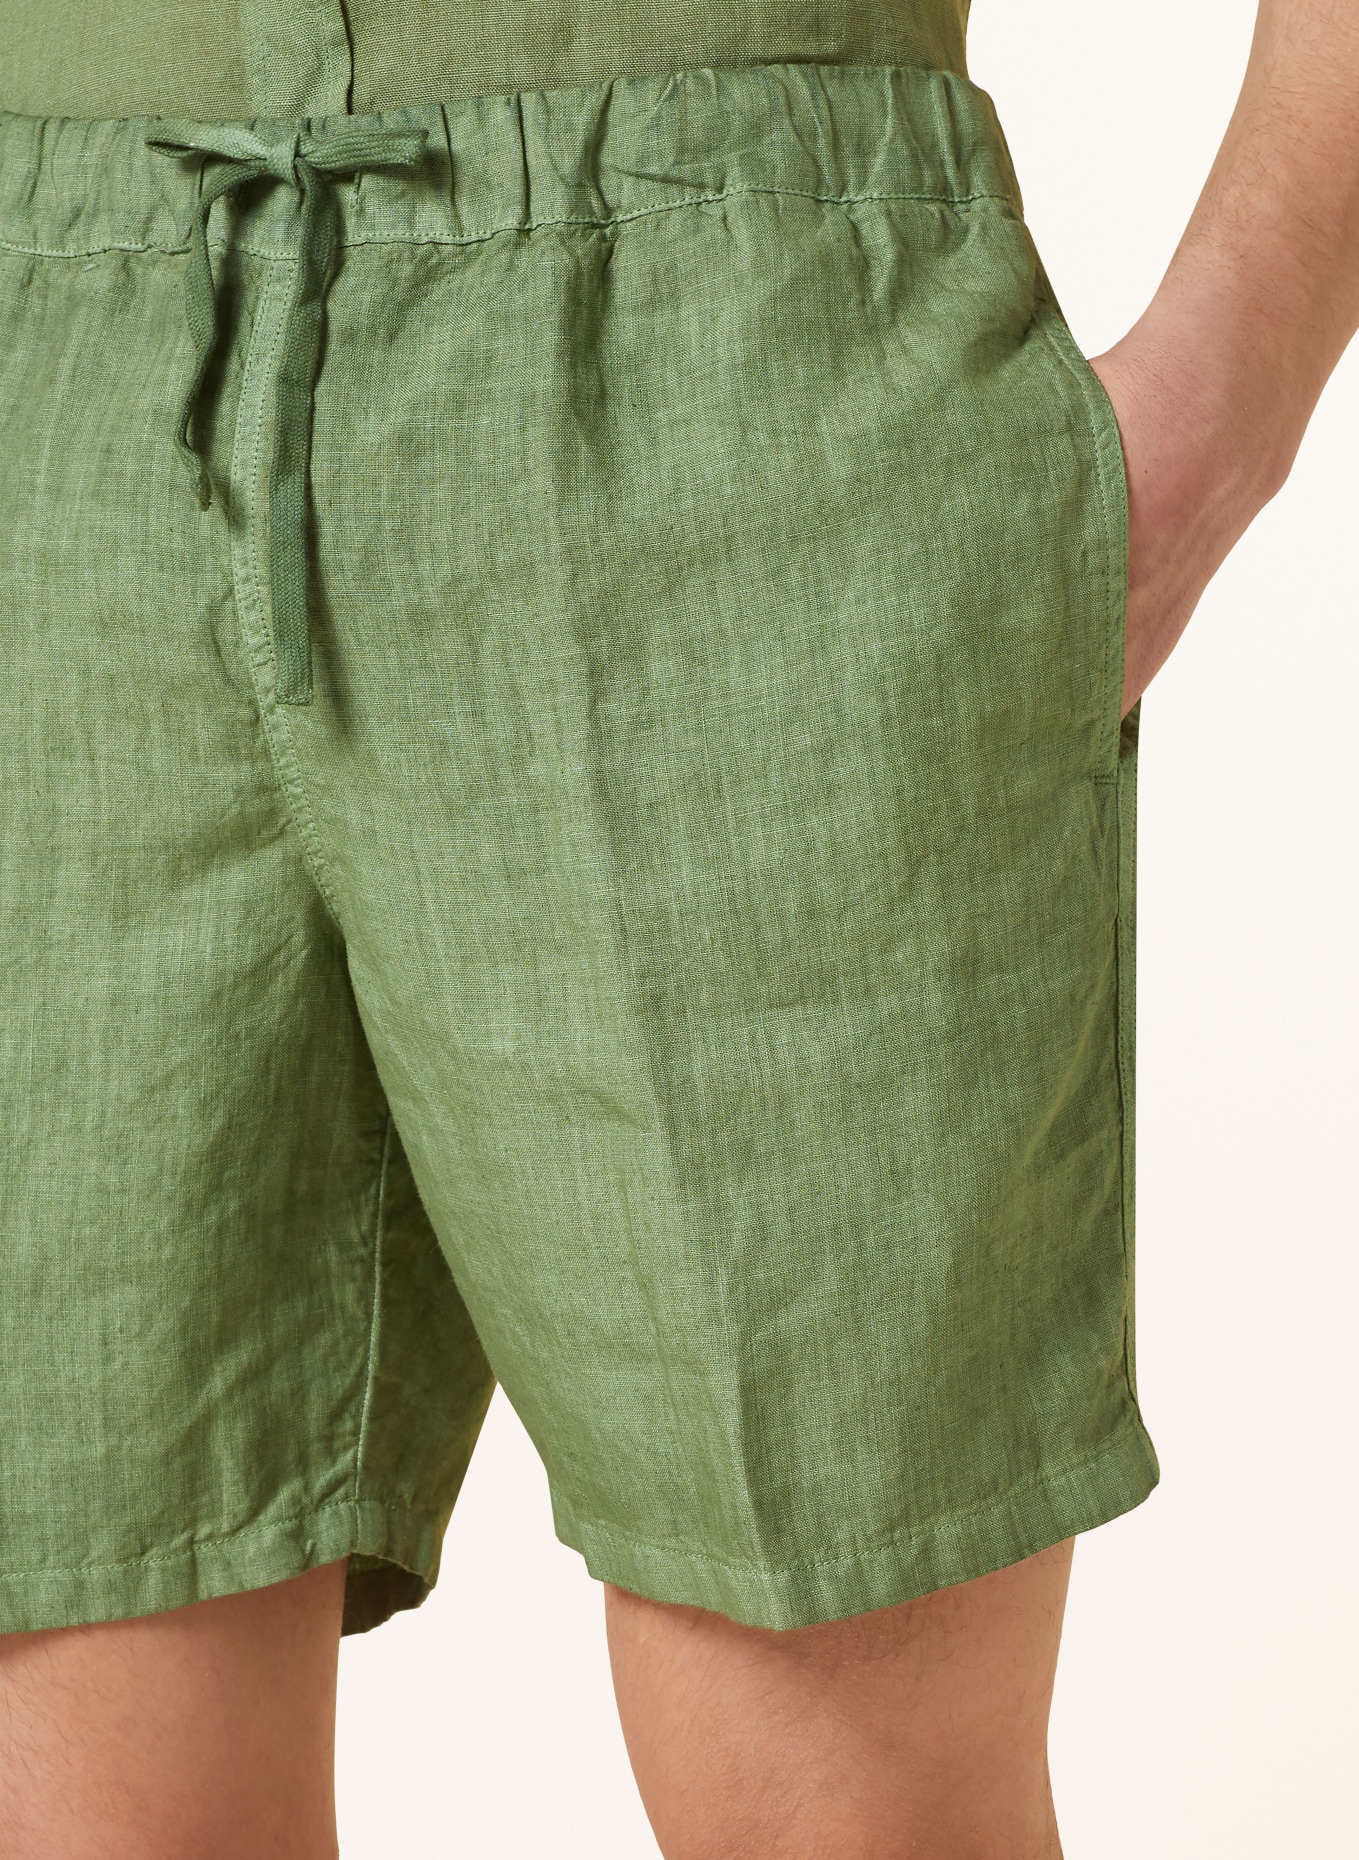 120%lino Linen shorts in dark green